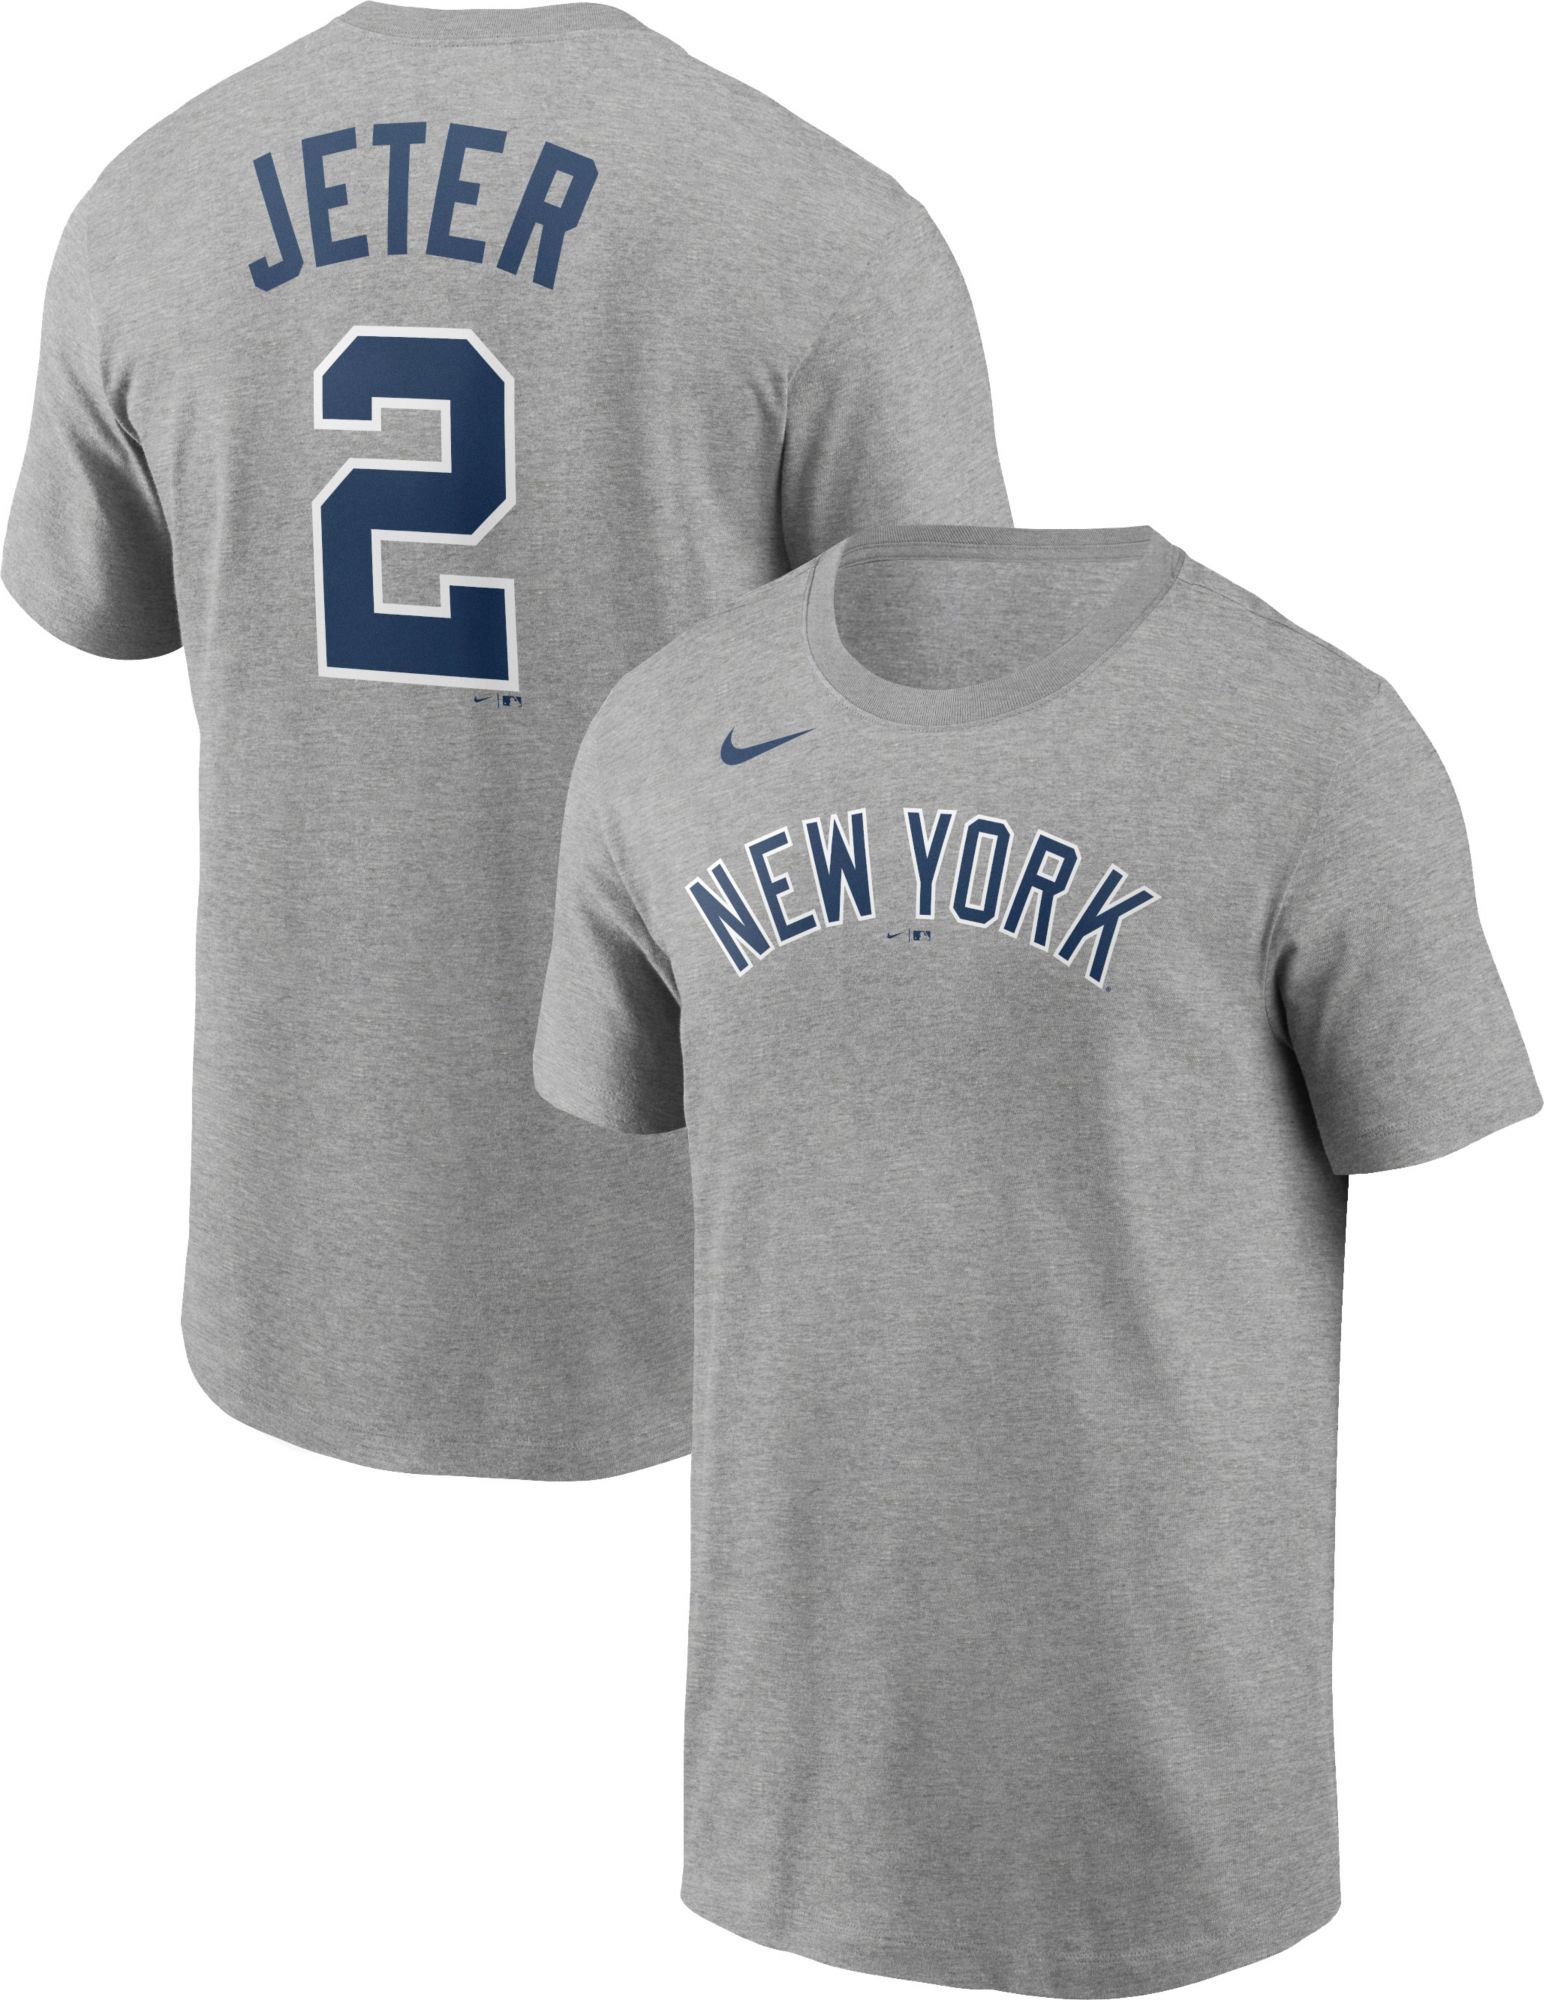 Nike / Men's Replica New York Yankees Aaron Judge #99 Navy